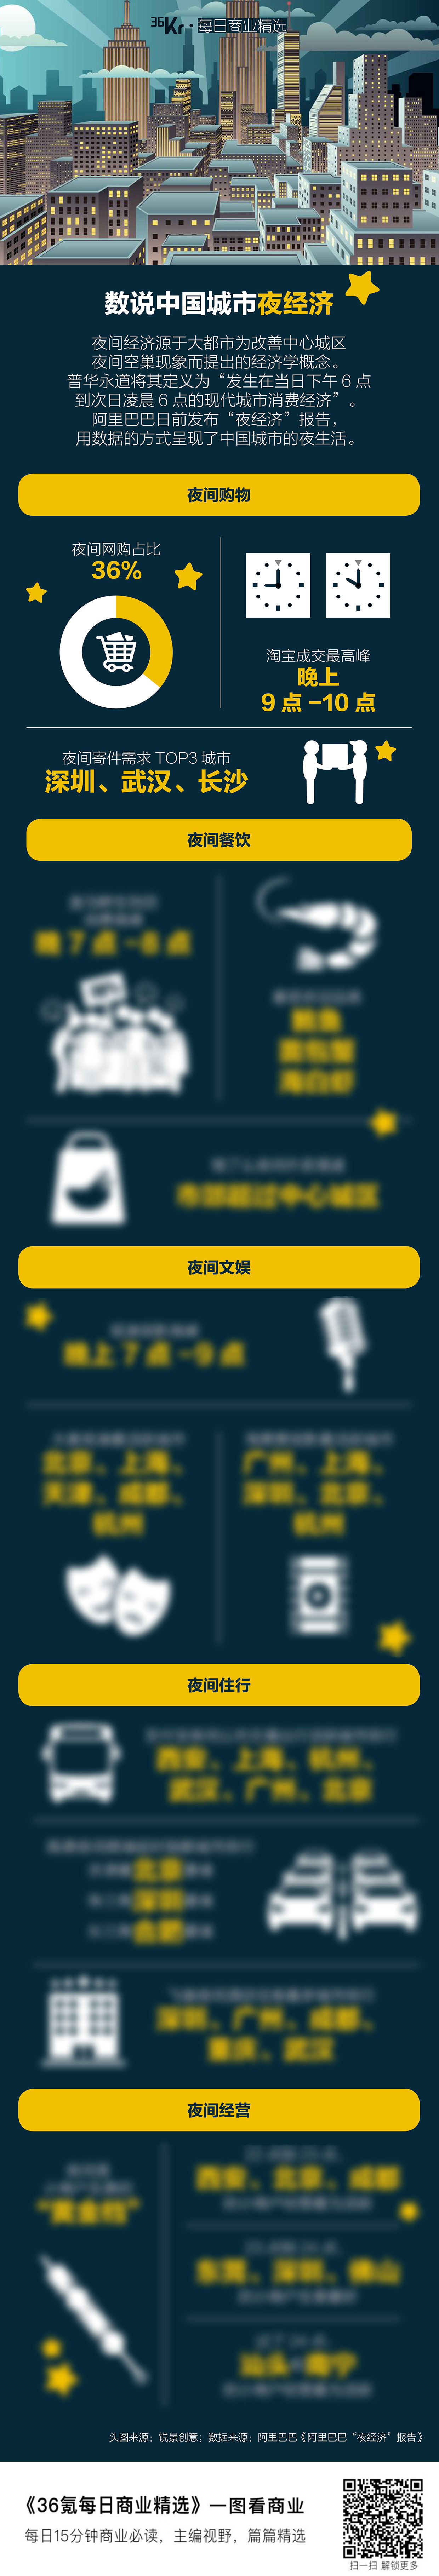 氪星晚报 | 华为发布首款5G手机 ；特斯拉否认与上海华谊合作；软银宣布已完成愿景基金2号1080亿美元的募资